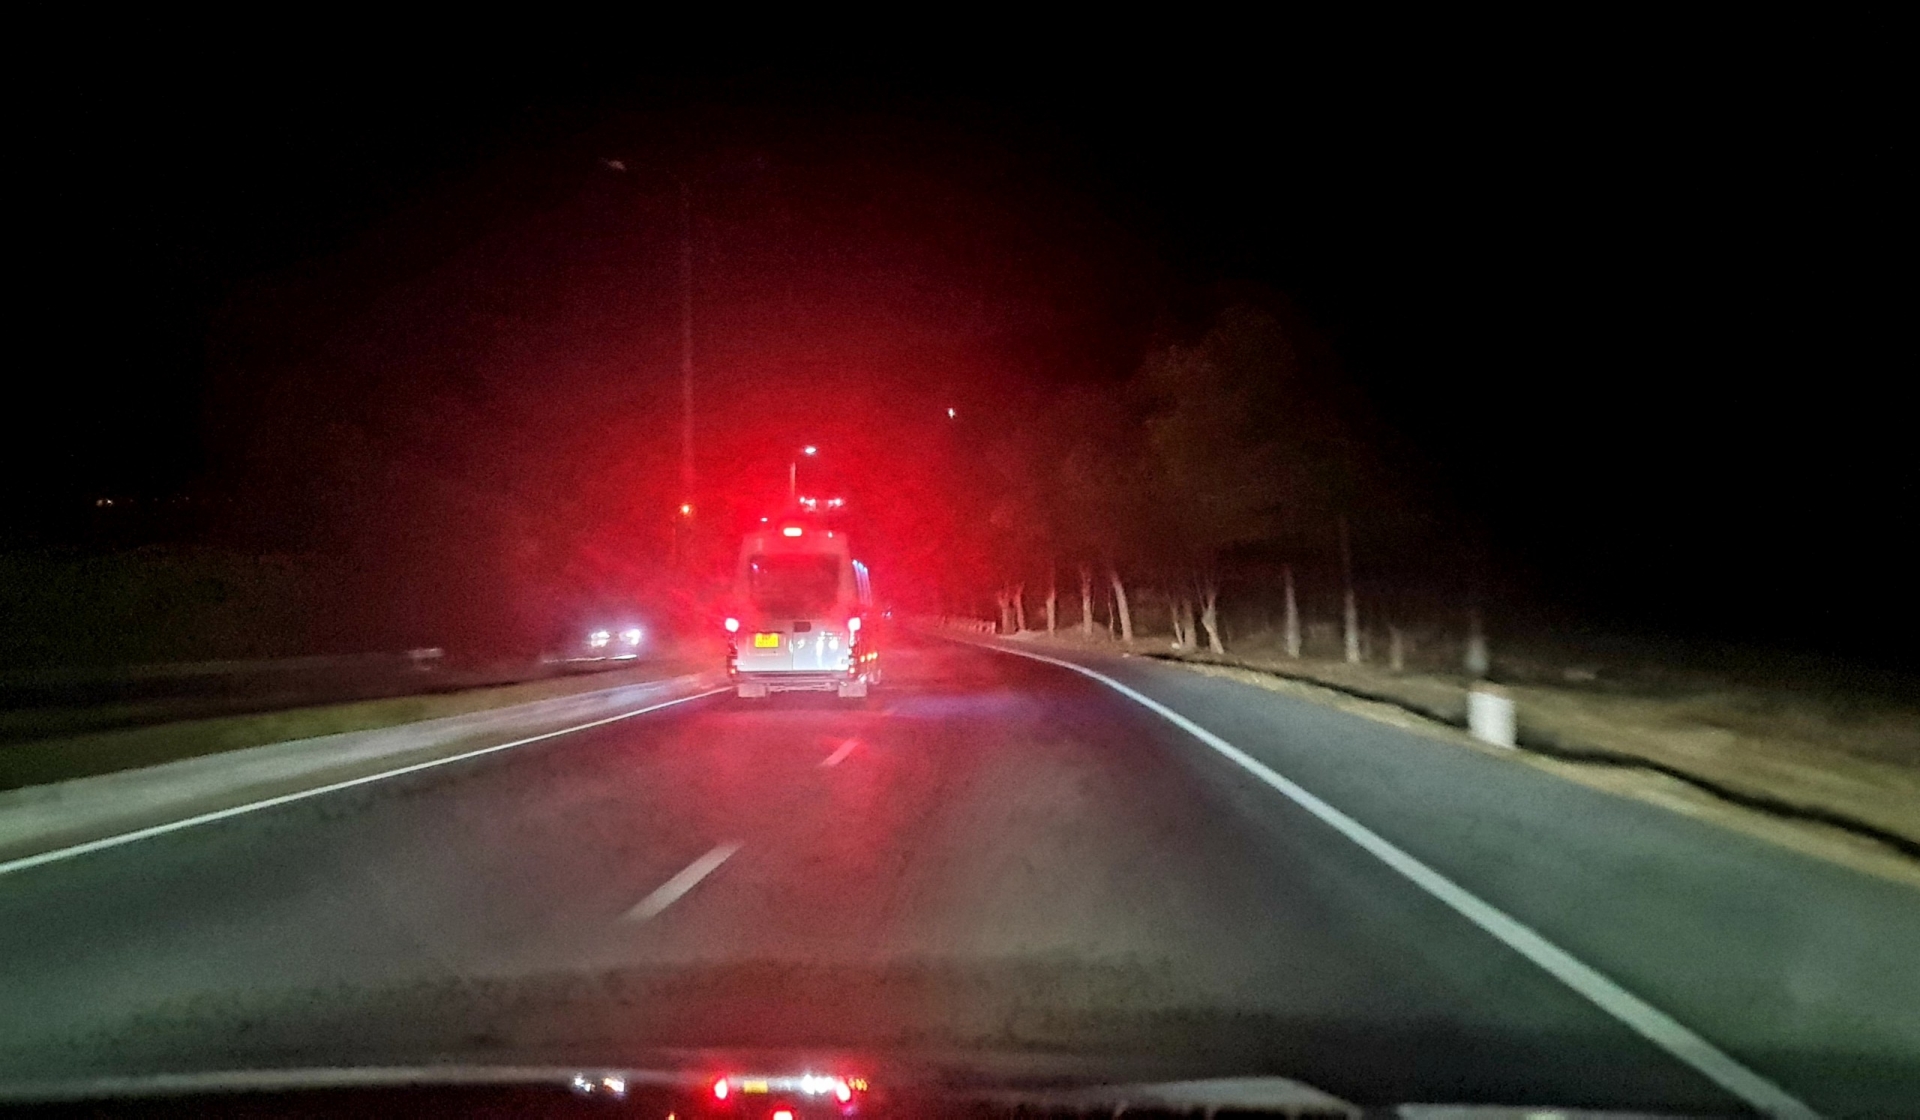 Cao tốc Liên Khương - Prenn nhiều đoạn không có đèn chiếu sáng, nguy cơ mất an toàn giao thông